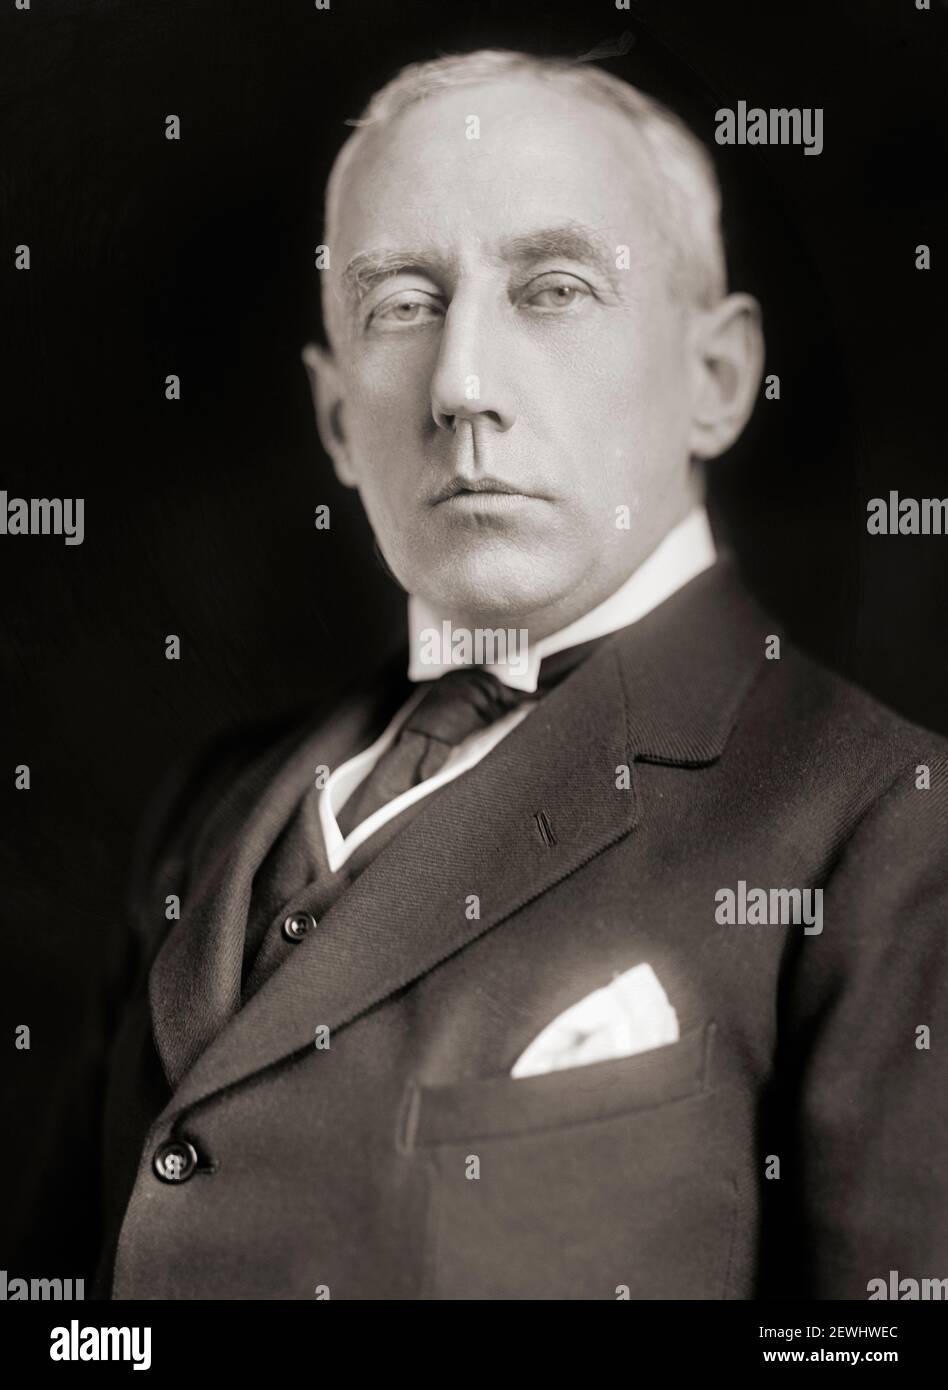 Roald Engelbregt Gravning Amundsen, 1872 – 1928. Norwegischer Polarforscher, Leiter der Antarktisexpedition von 1910–12, die als erste den Südpol erreichte. Nach einem Foto aus dem frühen 20th. Jahrhundert. Stockfoto